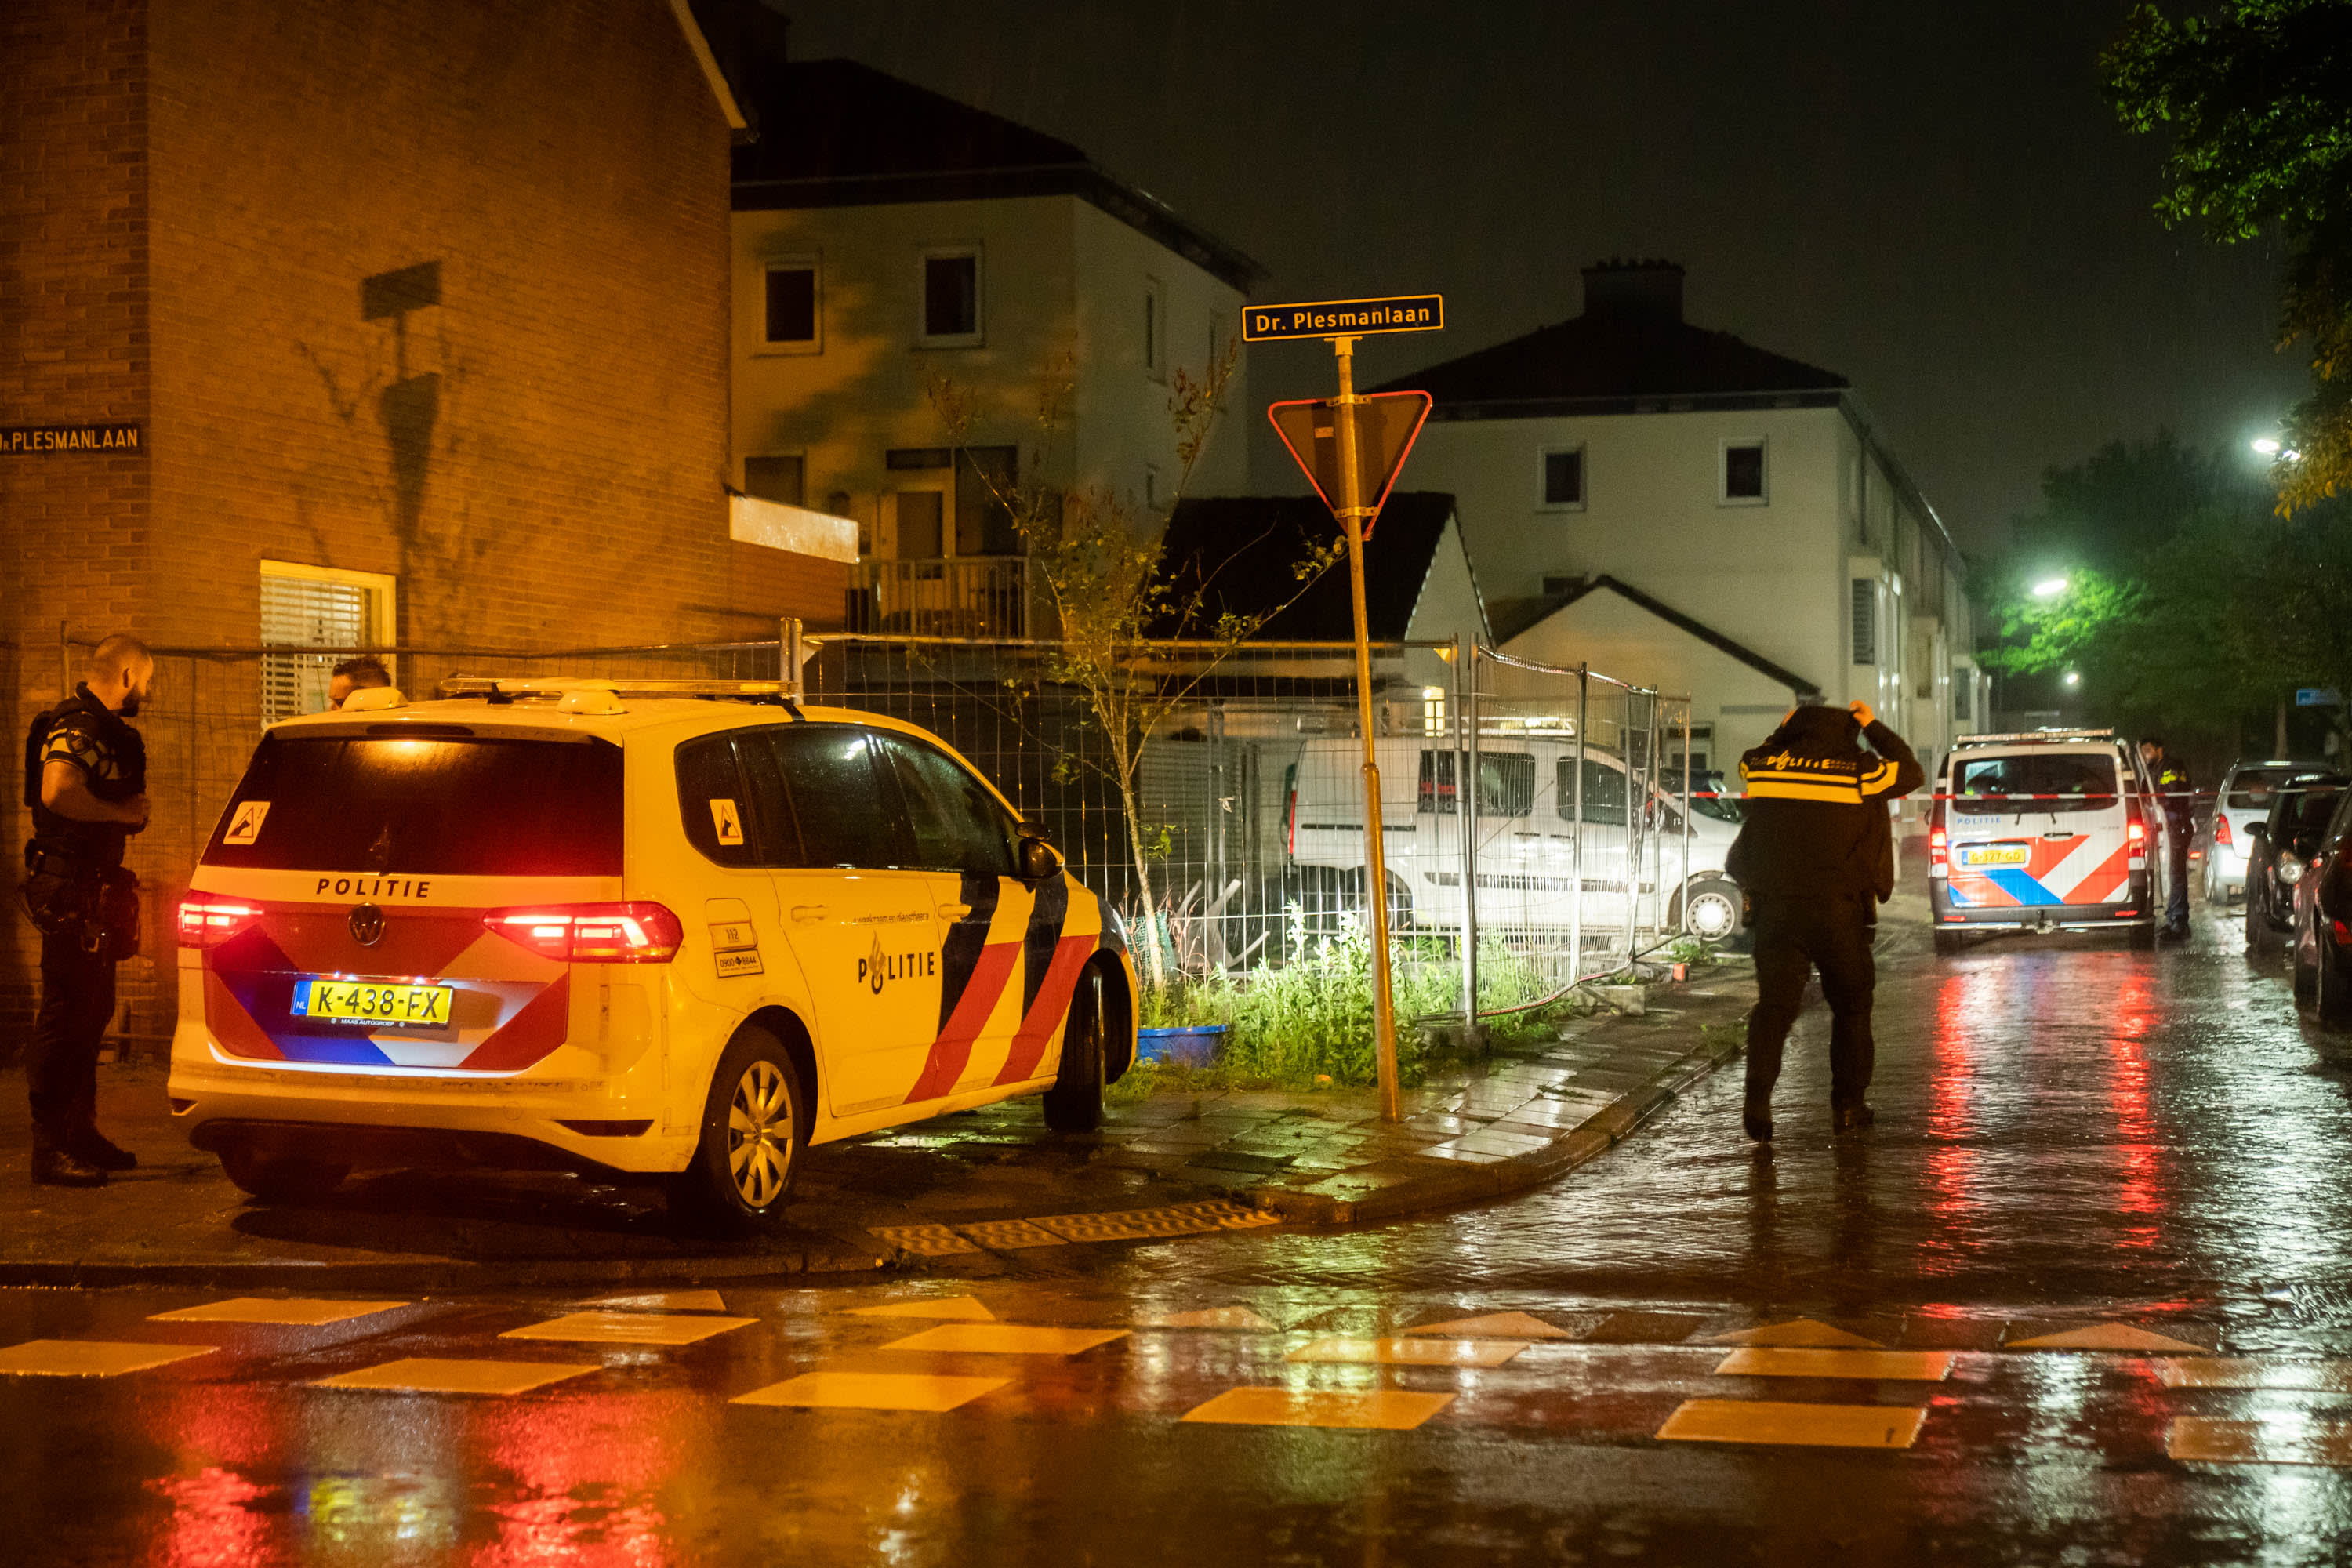 Twee gewonden door overval op woning in Maarssen